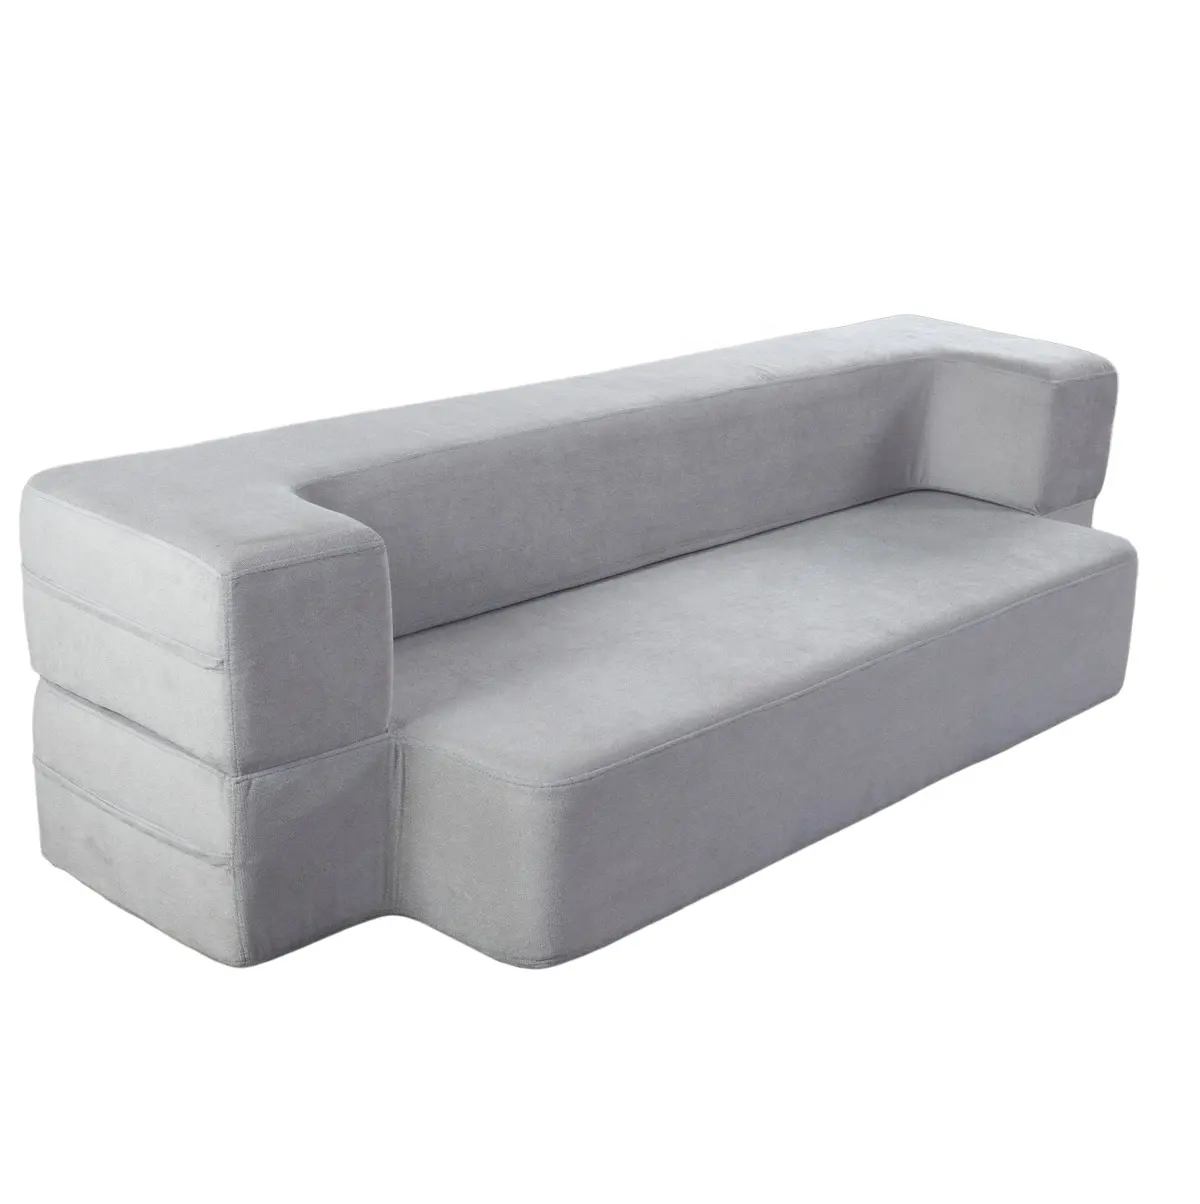 2020 novo produto loveseats moderna sala de estar sofá cama dobrável portátil